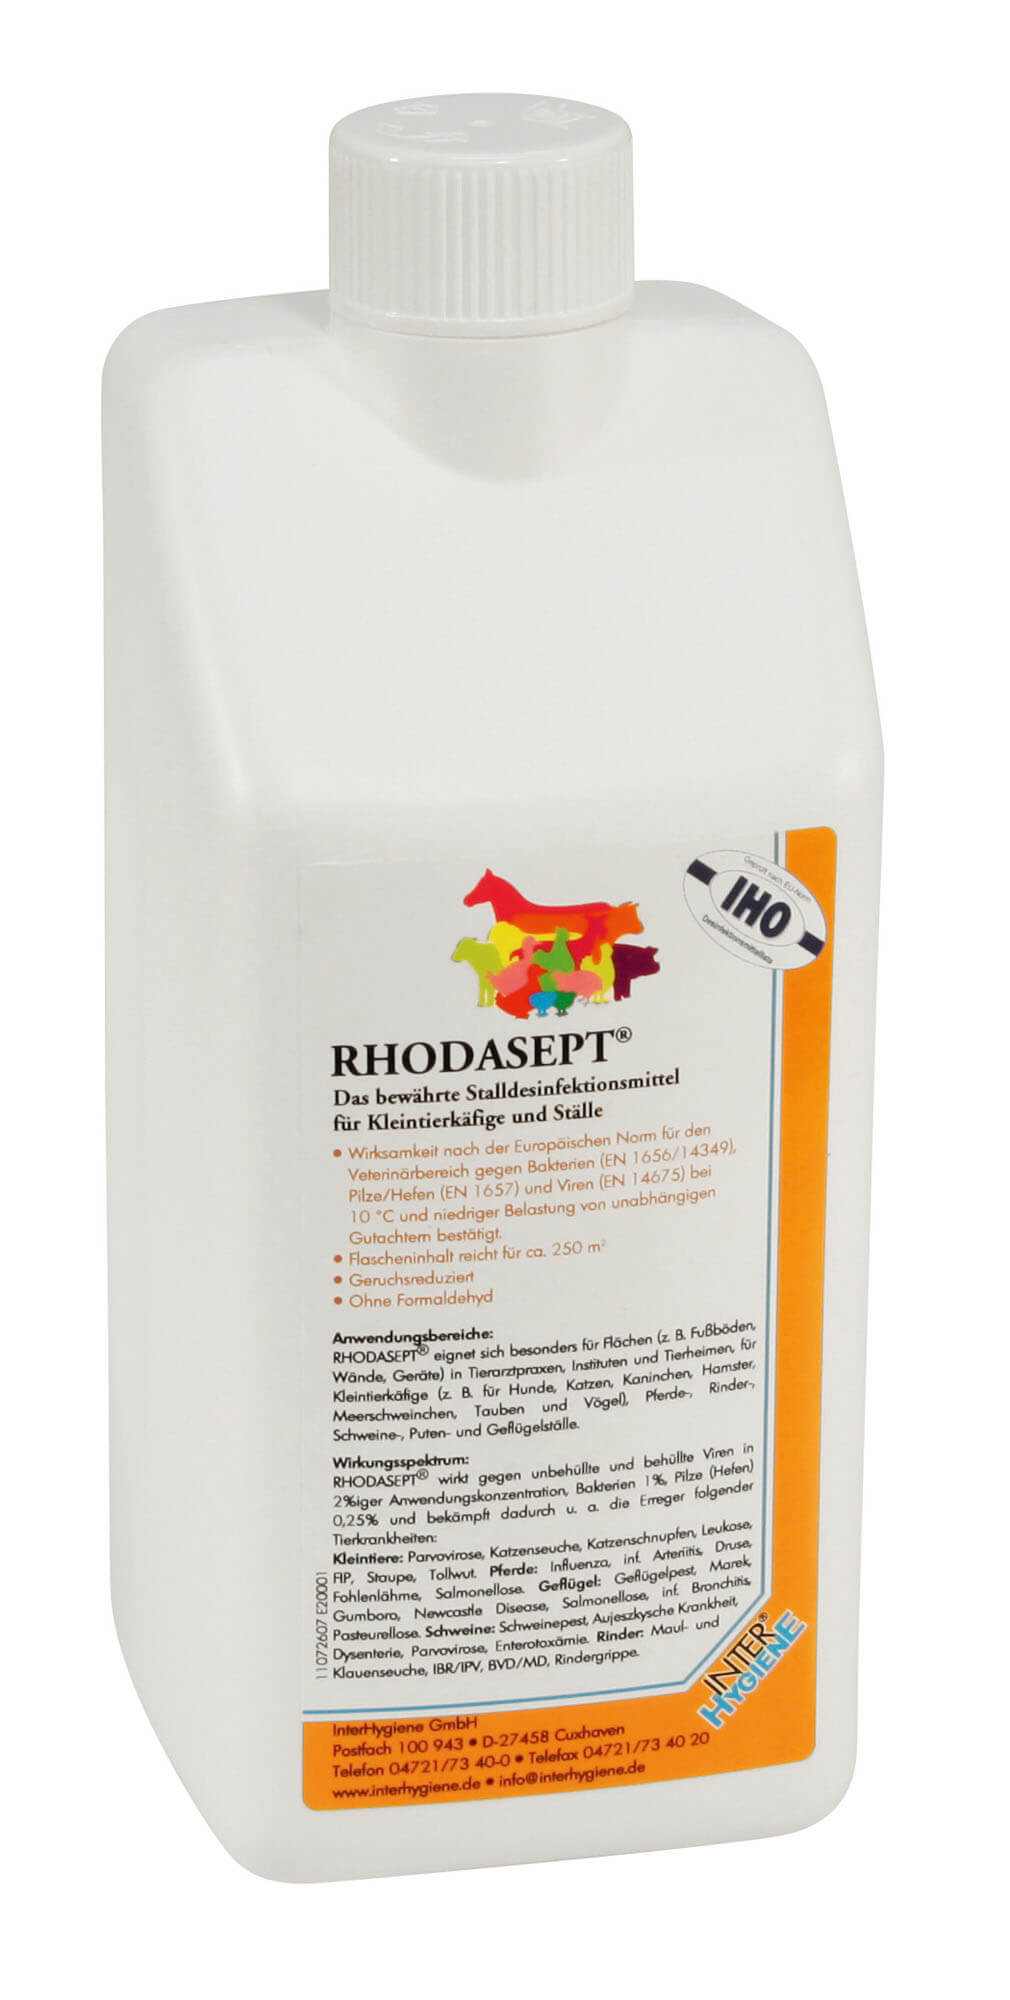 Stalldesinfektionsmittel RHODASEPT 1 kg